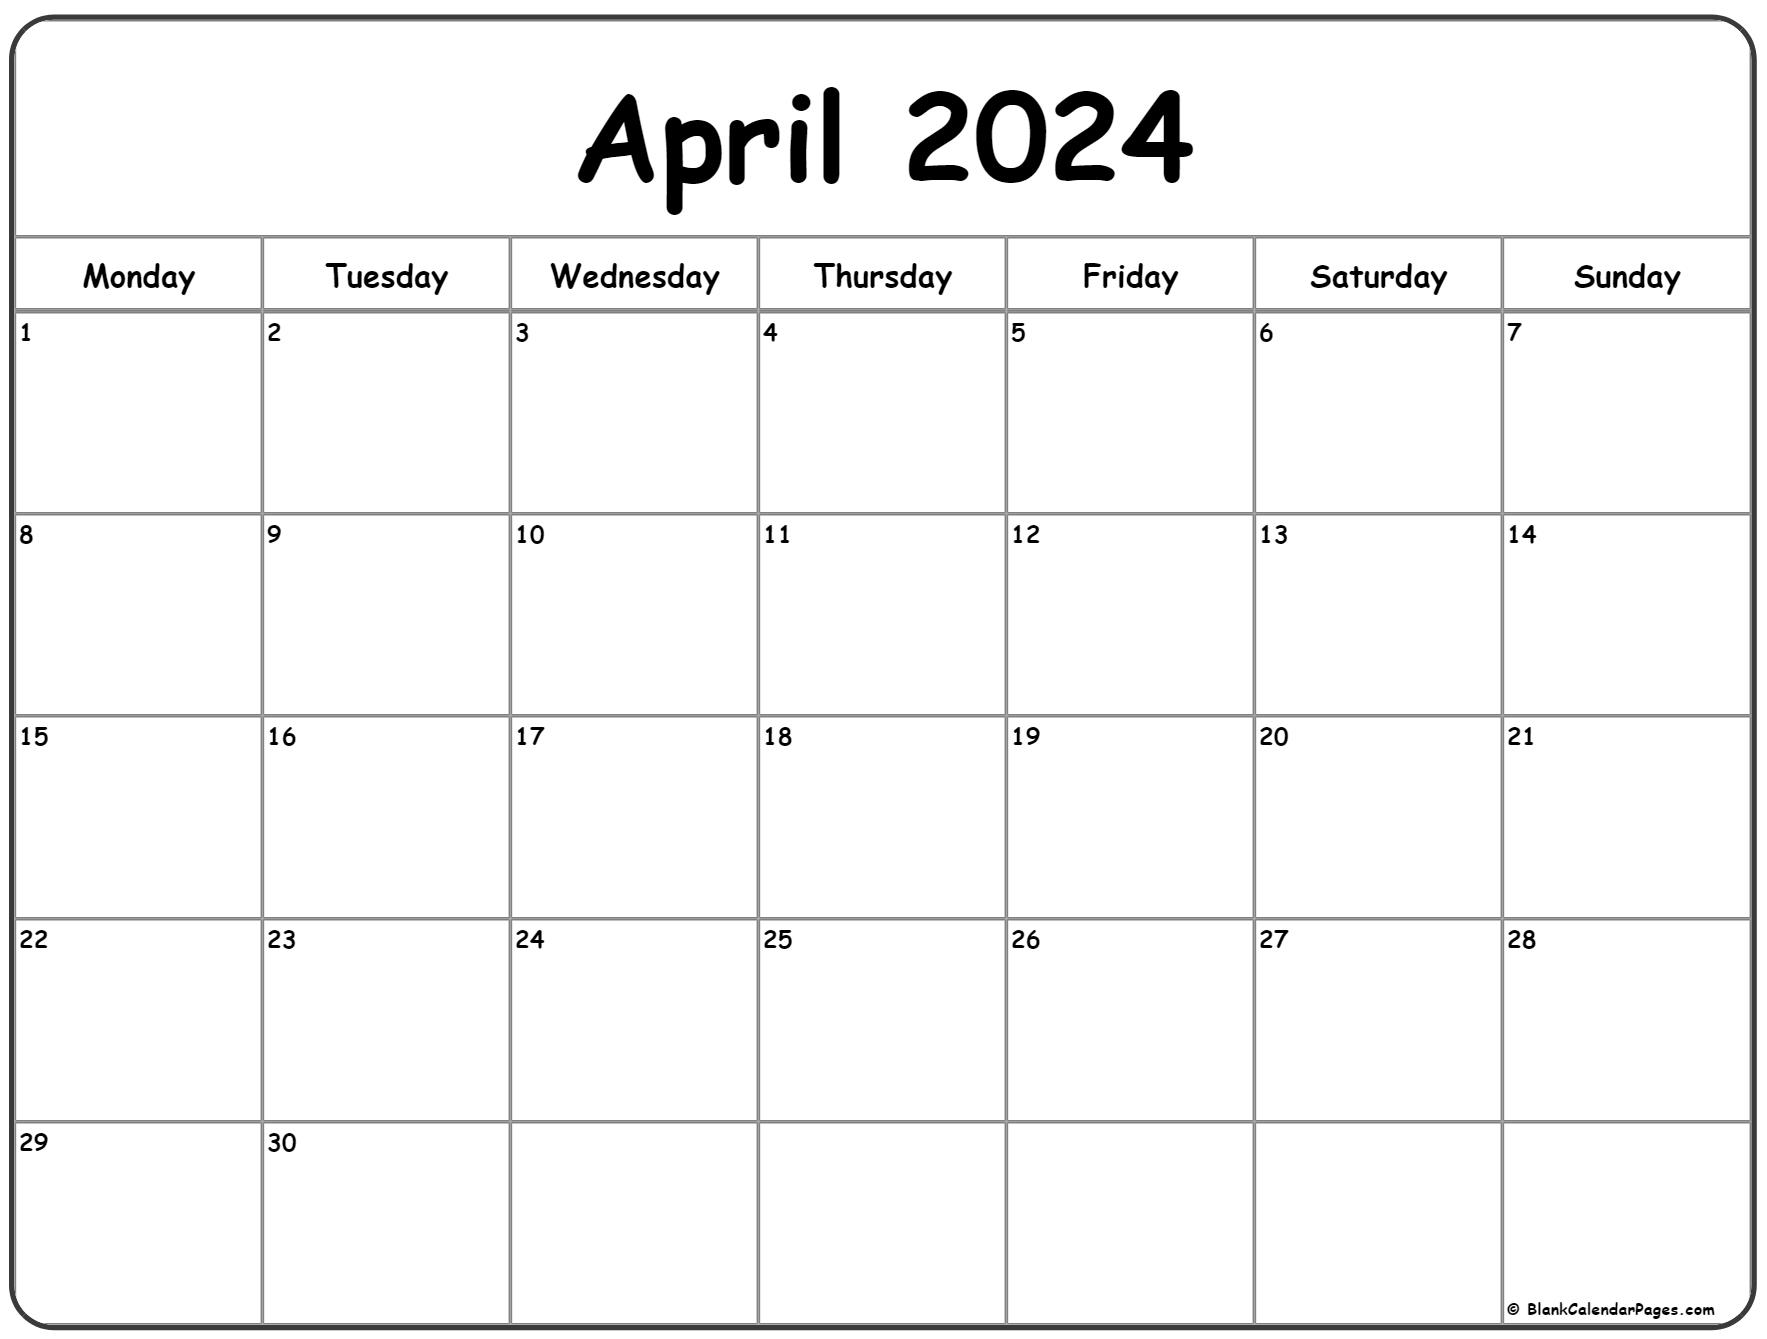 Blank Calendar April 2021 April 2021 Monday Calendar | Monday to Sunday